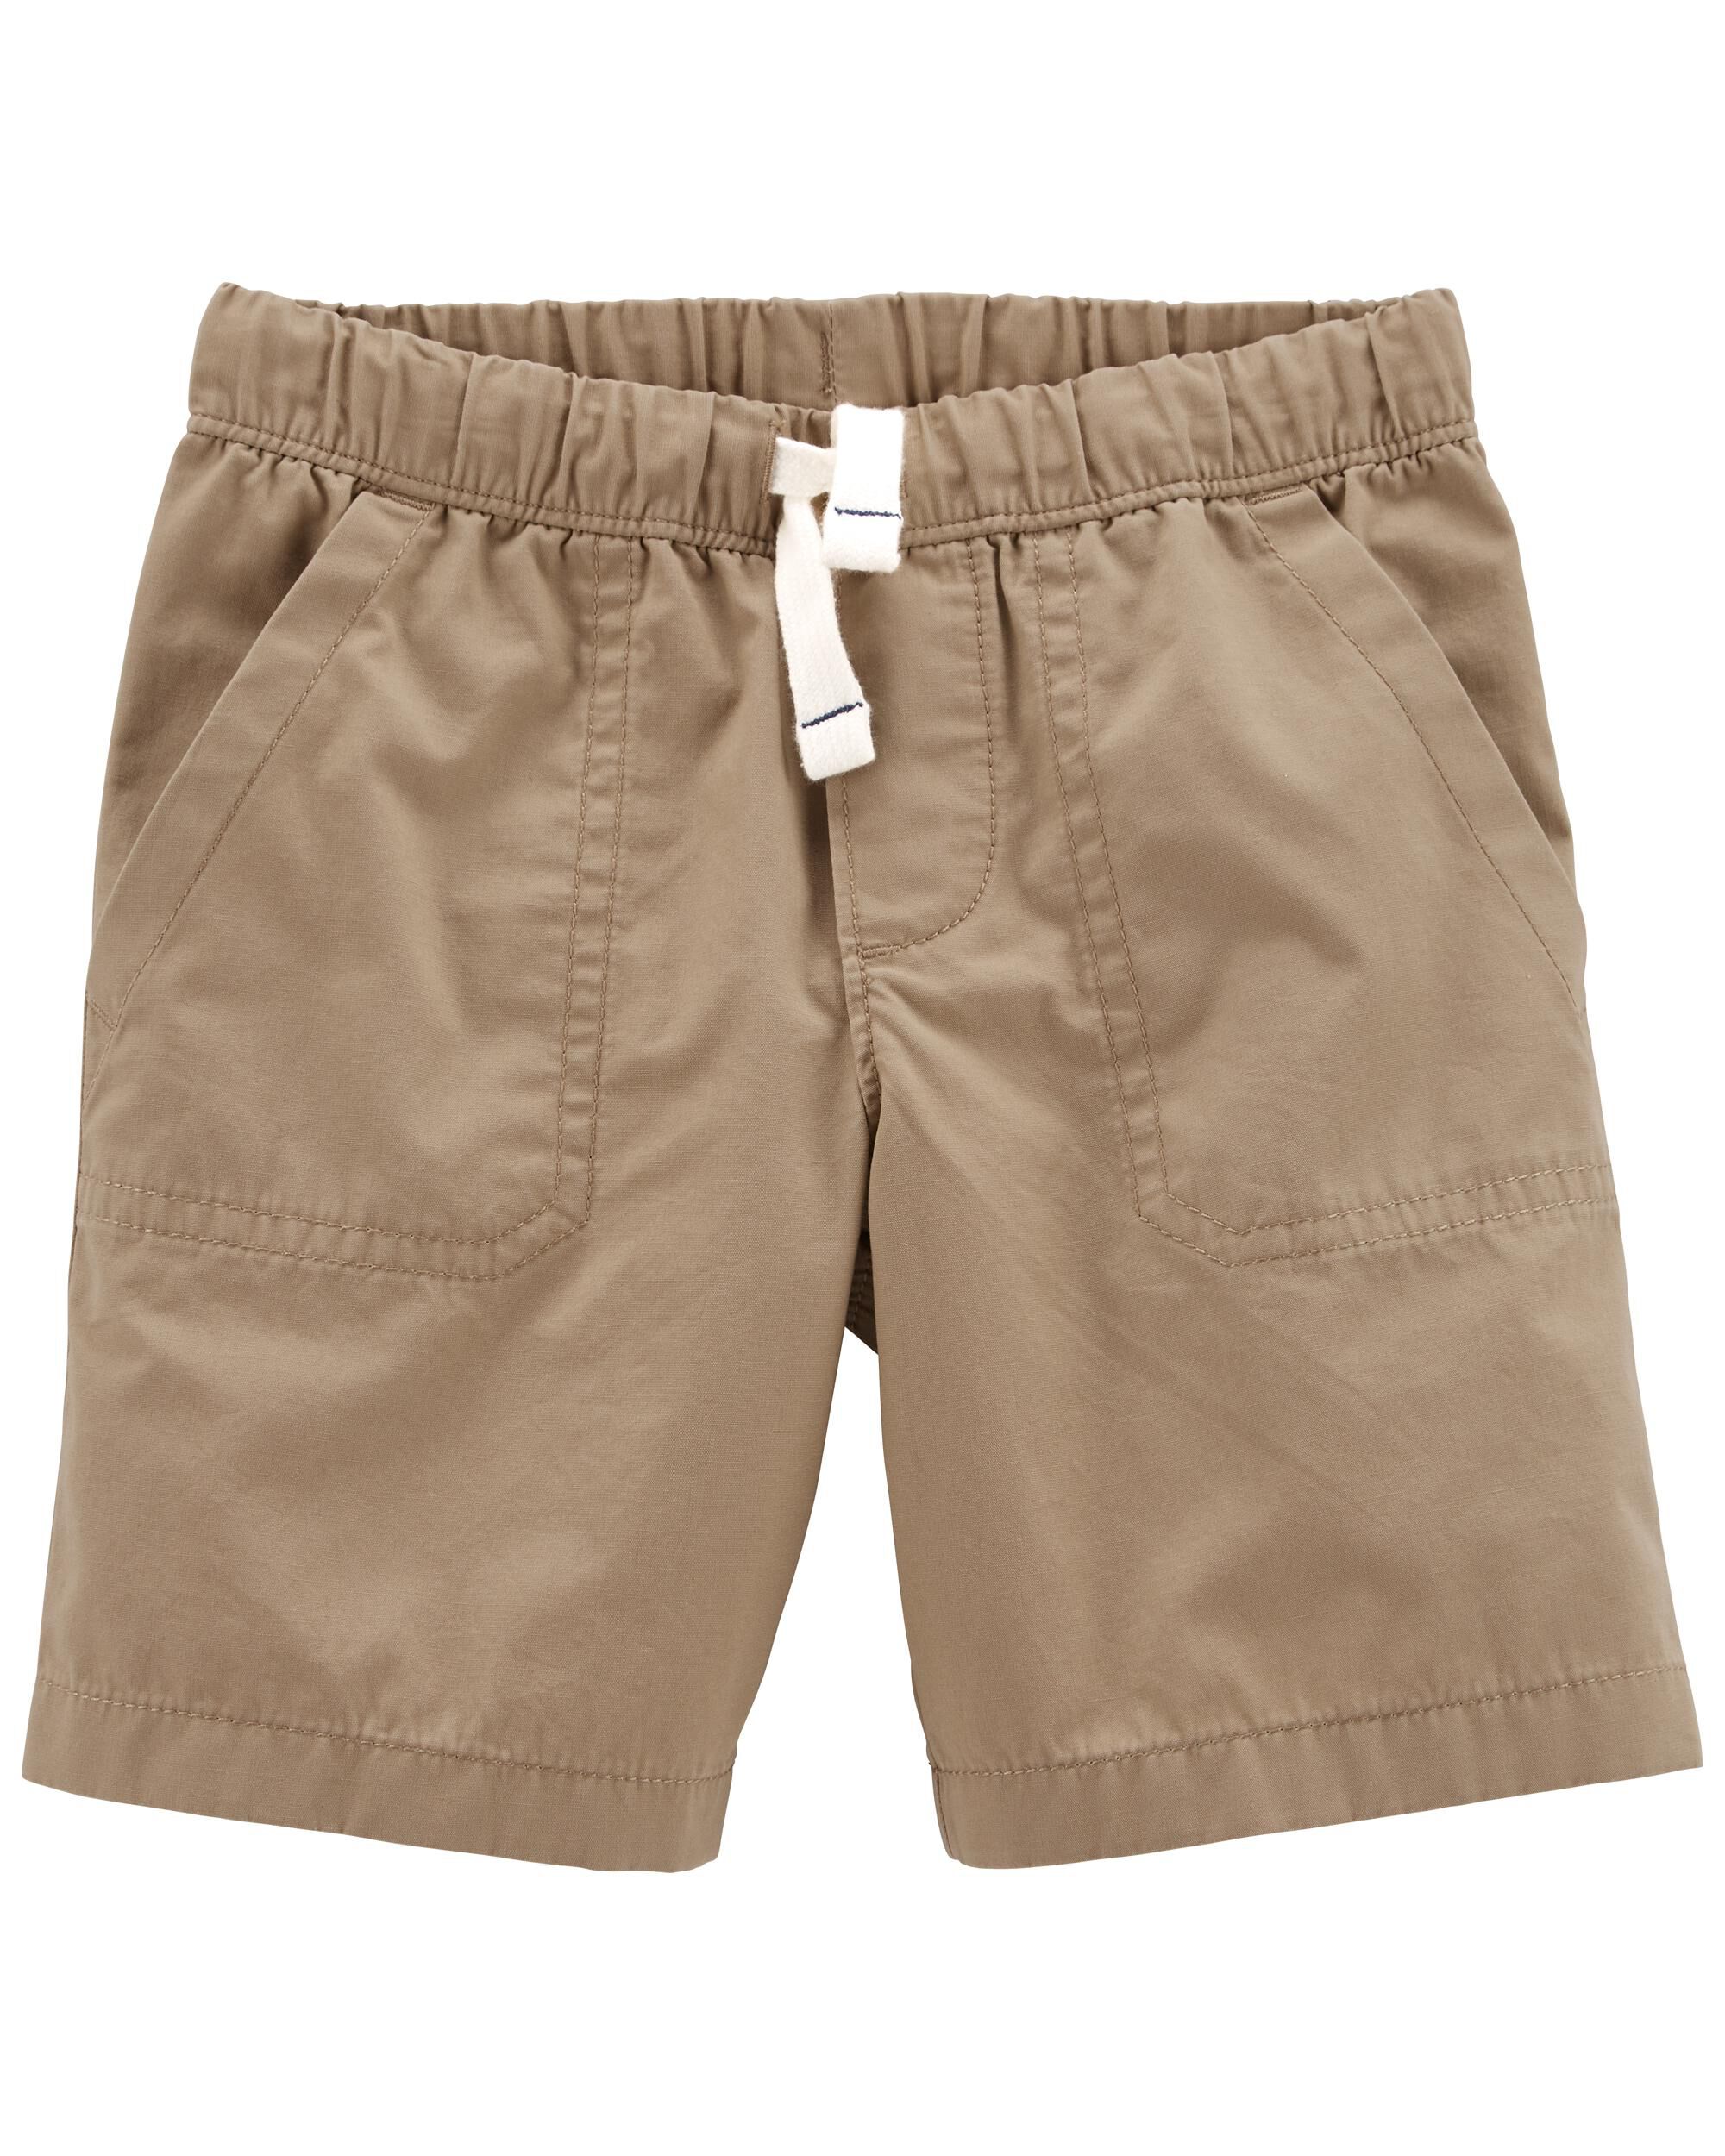 New Carter's Boy Pull-On Knit Denim Shorts Many sizes toddler kid boy 